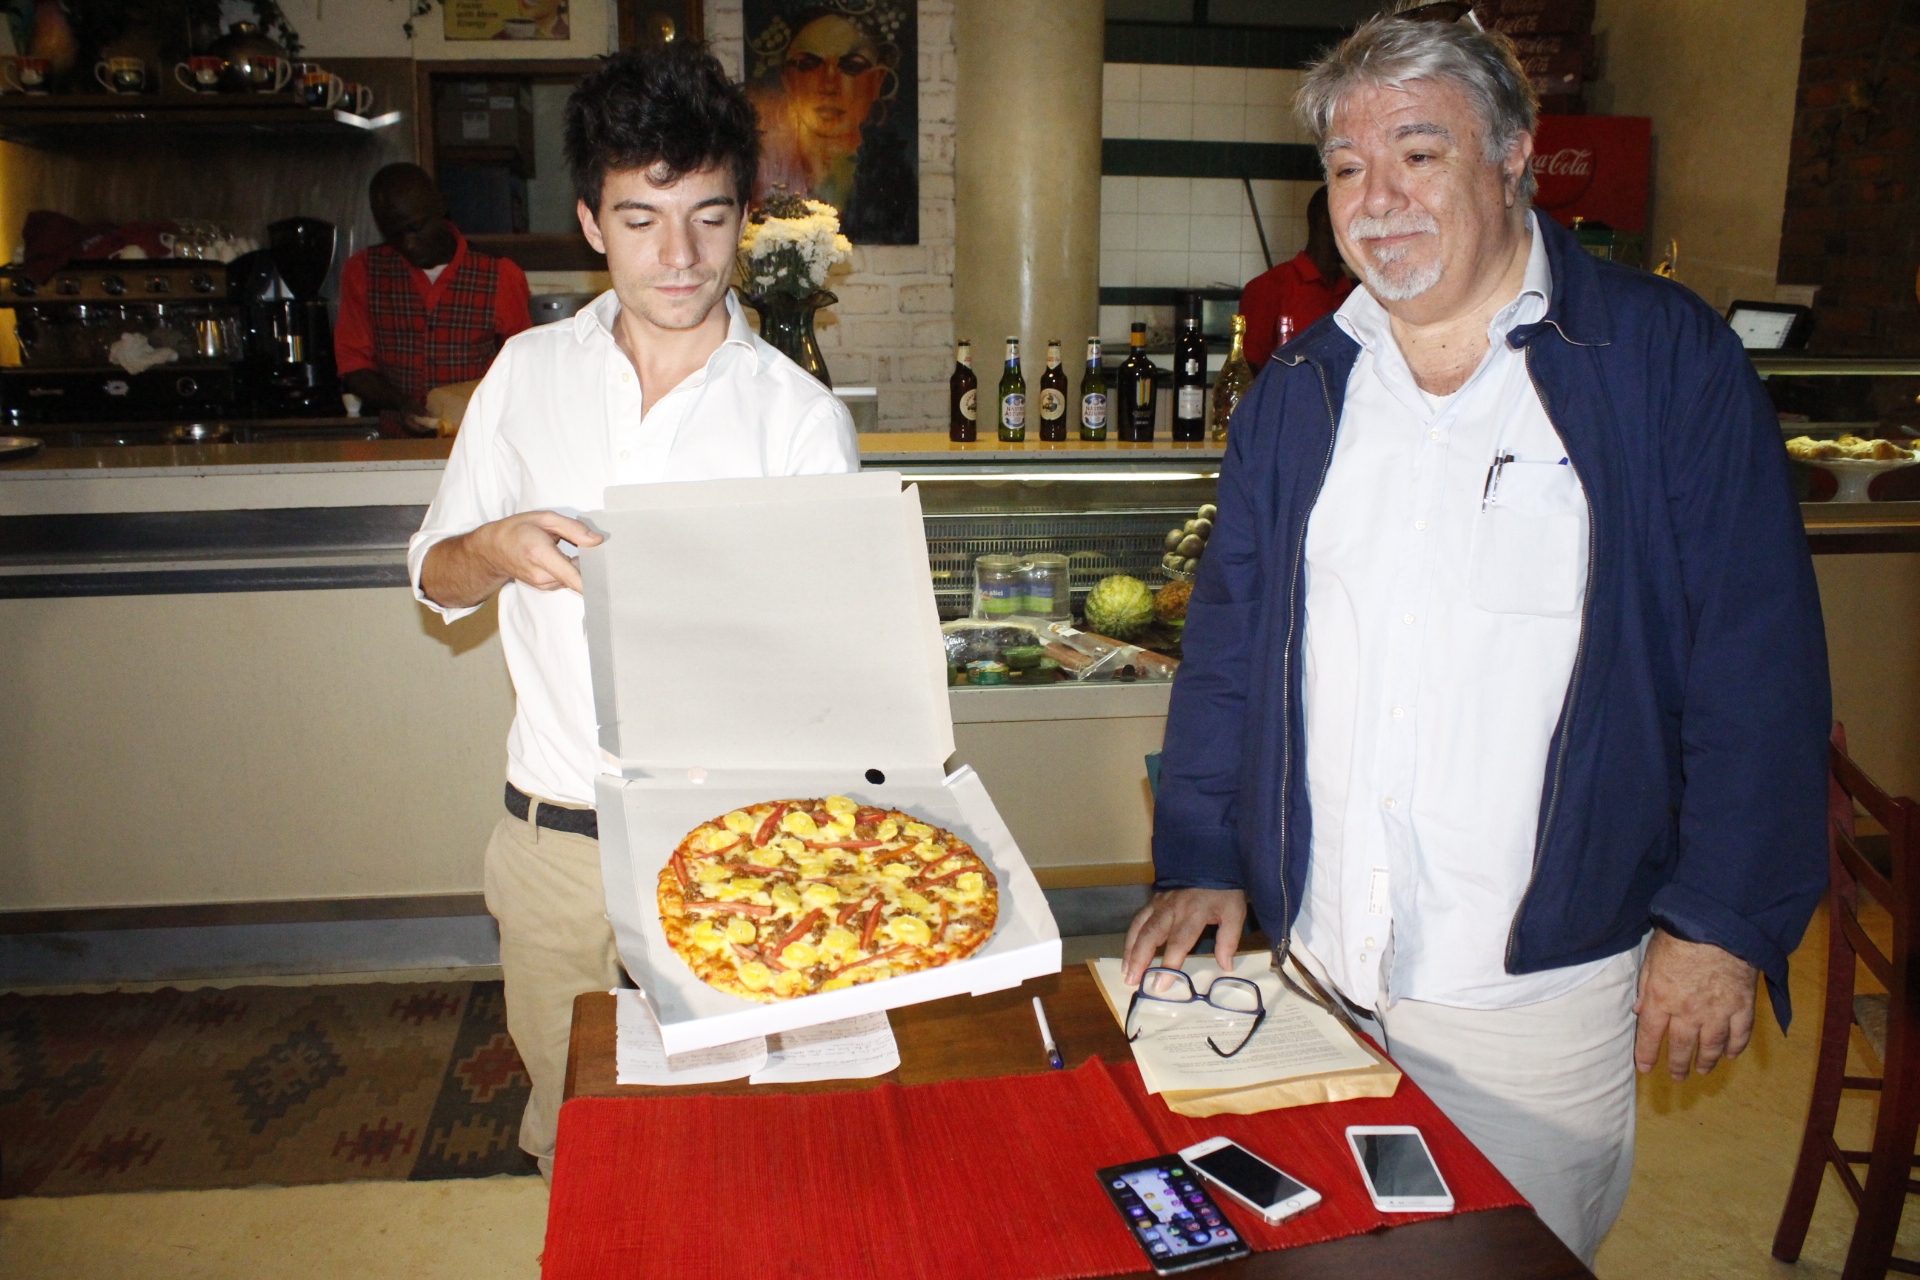 Leonardo Giannetti (Son of Proprietor- Pizza Connection) with Stefano Giannetti (Proprietor- Pizza Connection) unveiling the new Pizza Matooke